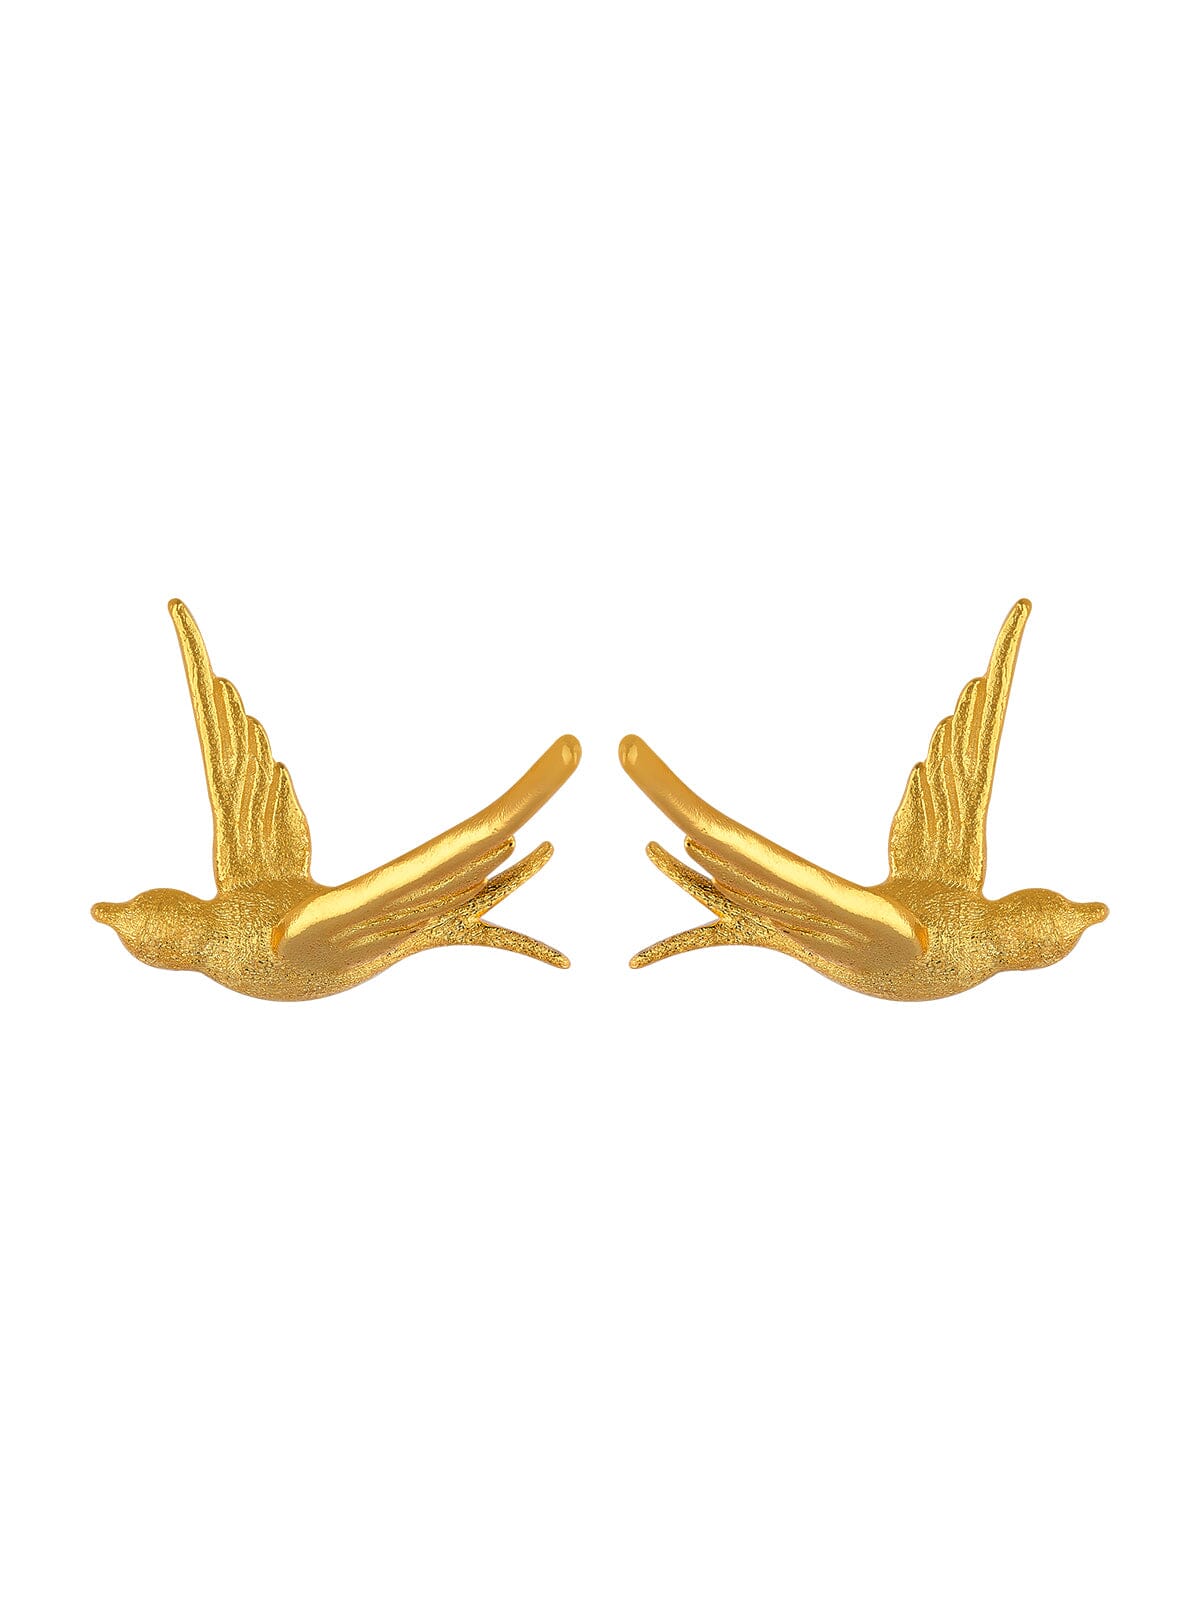 Swallow Stud Earrings earrings Vinty Jewelry Gold 